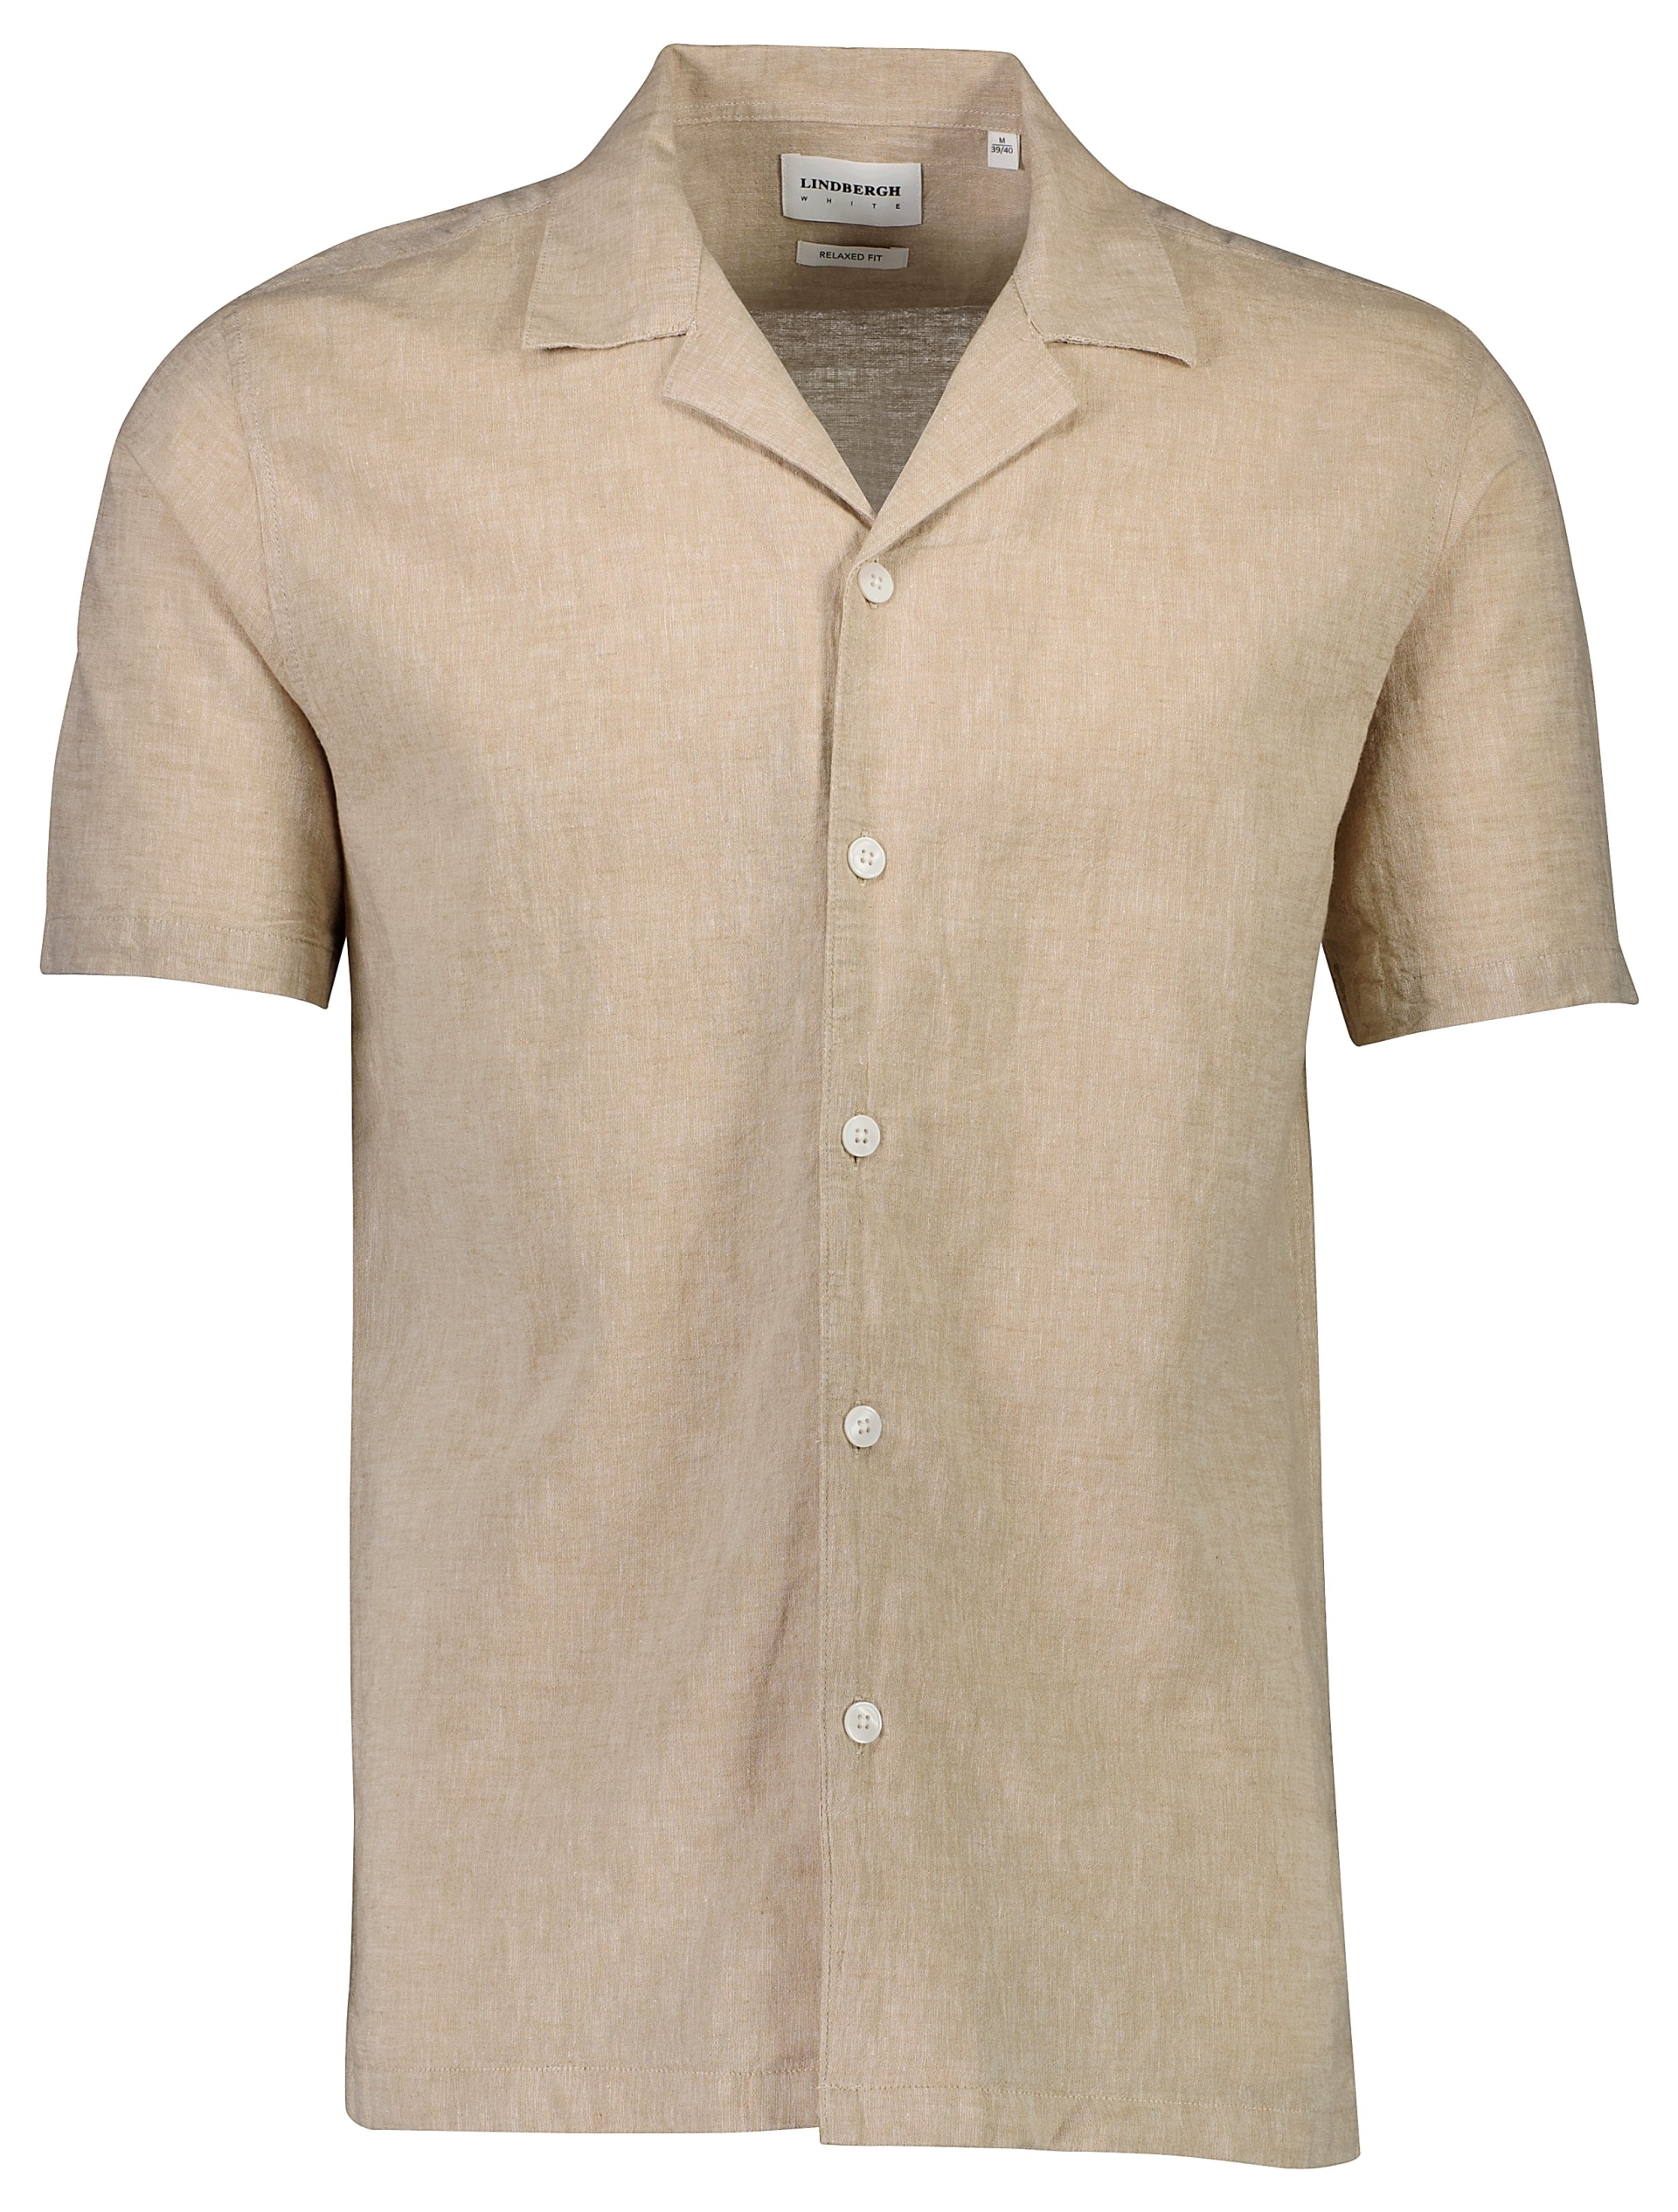 Lindbergh Linen shirt sand / sand